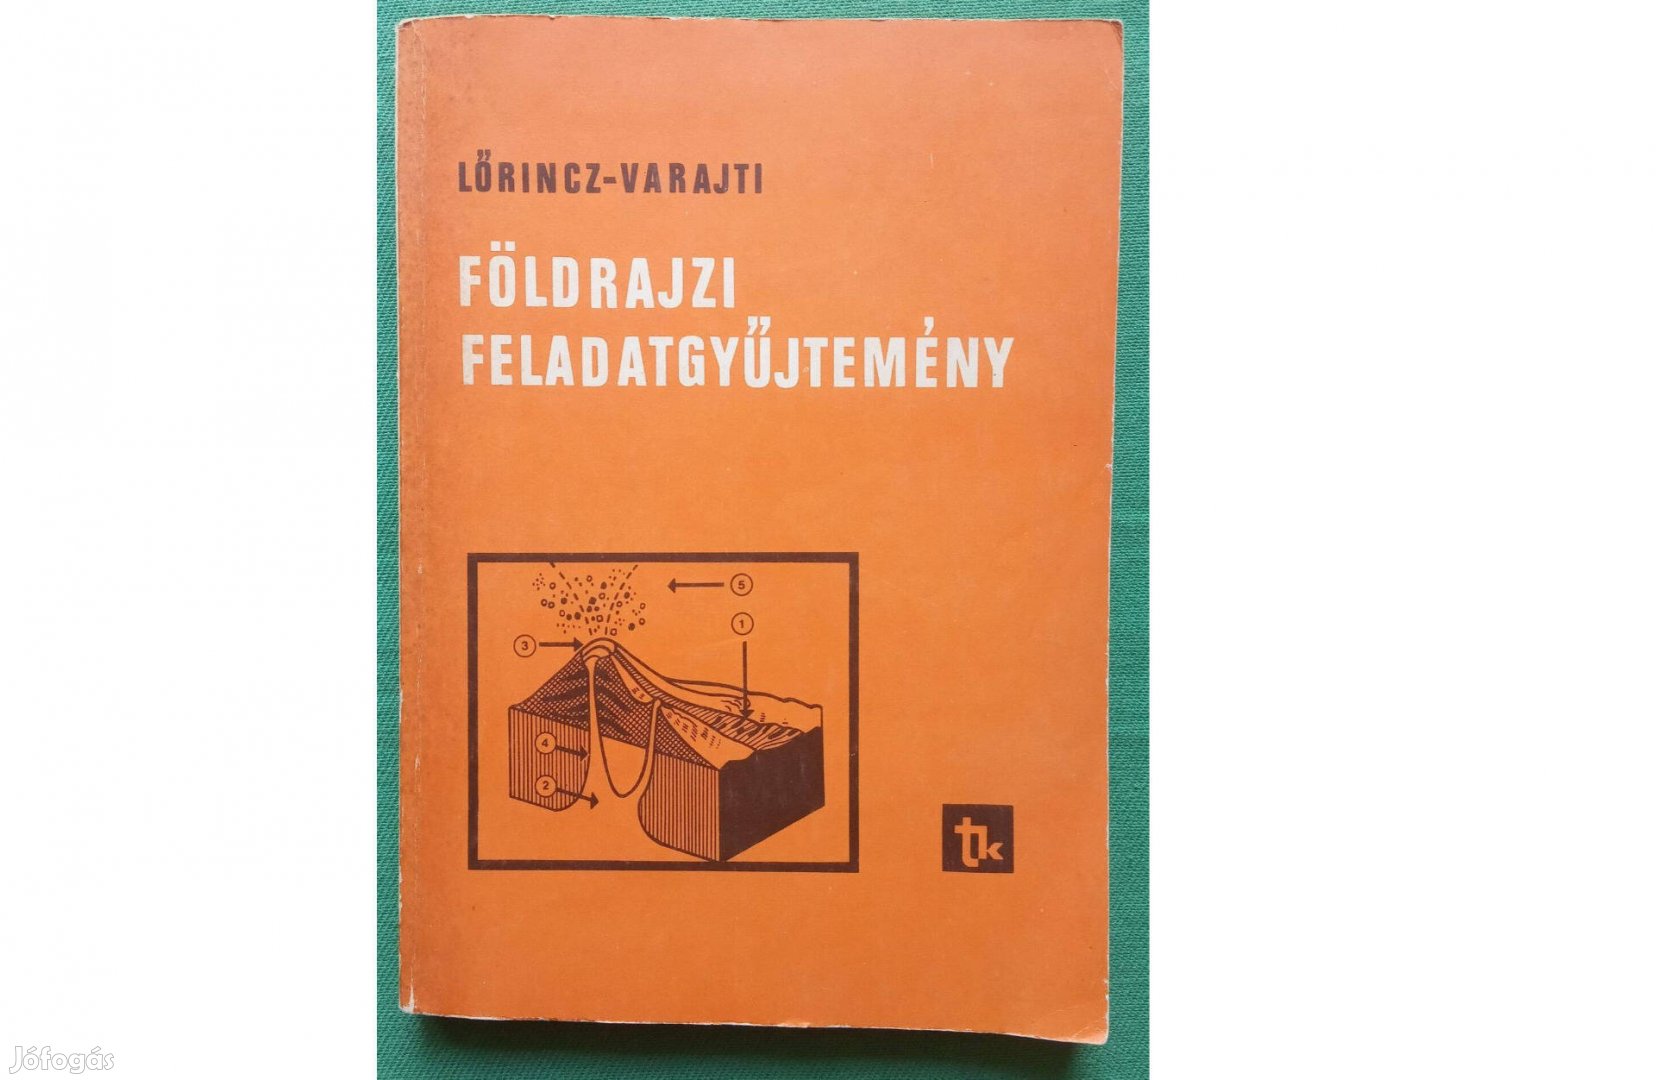 Lőrincz András, Varajti Károly: Földrajzi feladatgyűjtemény (1978)